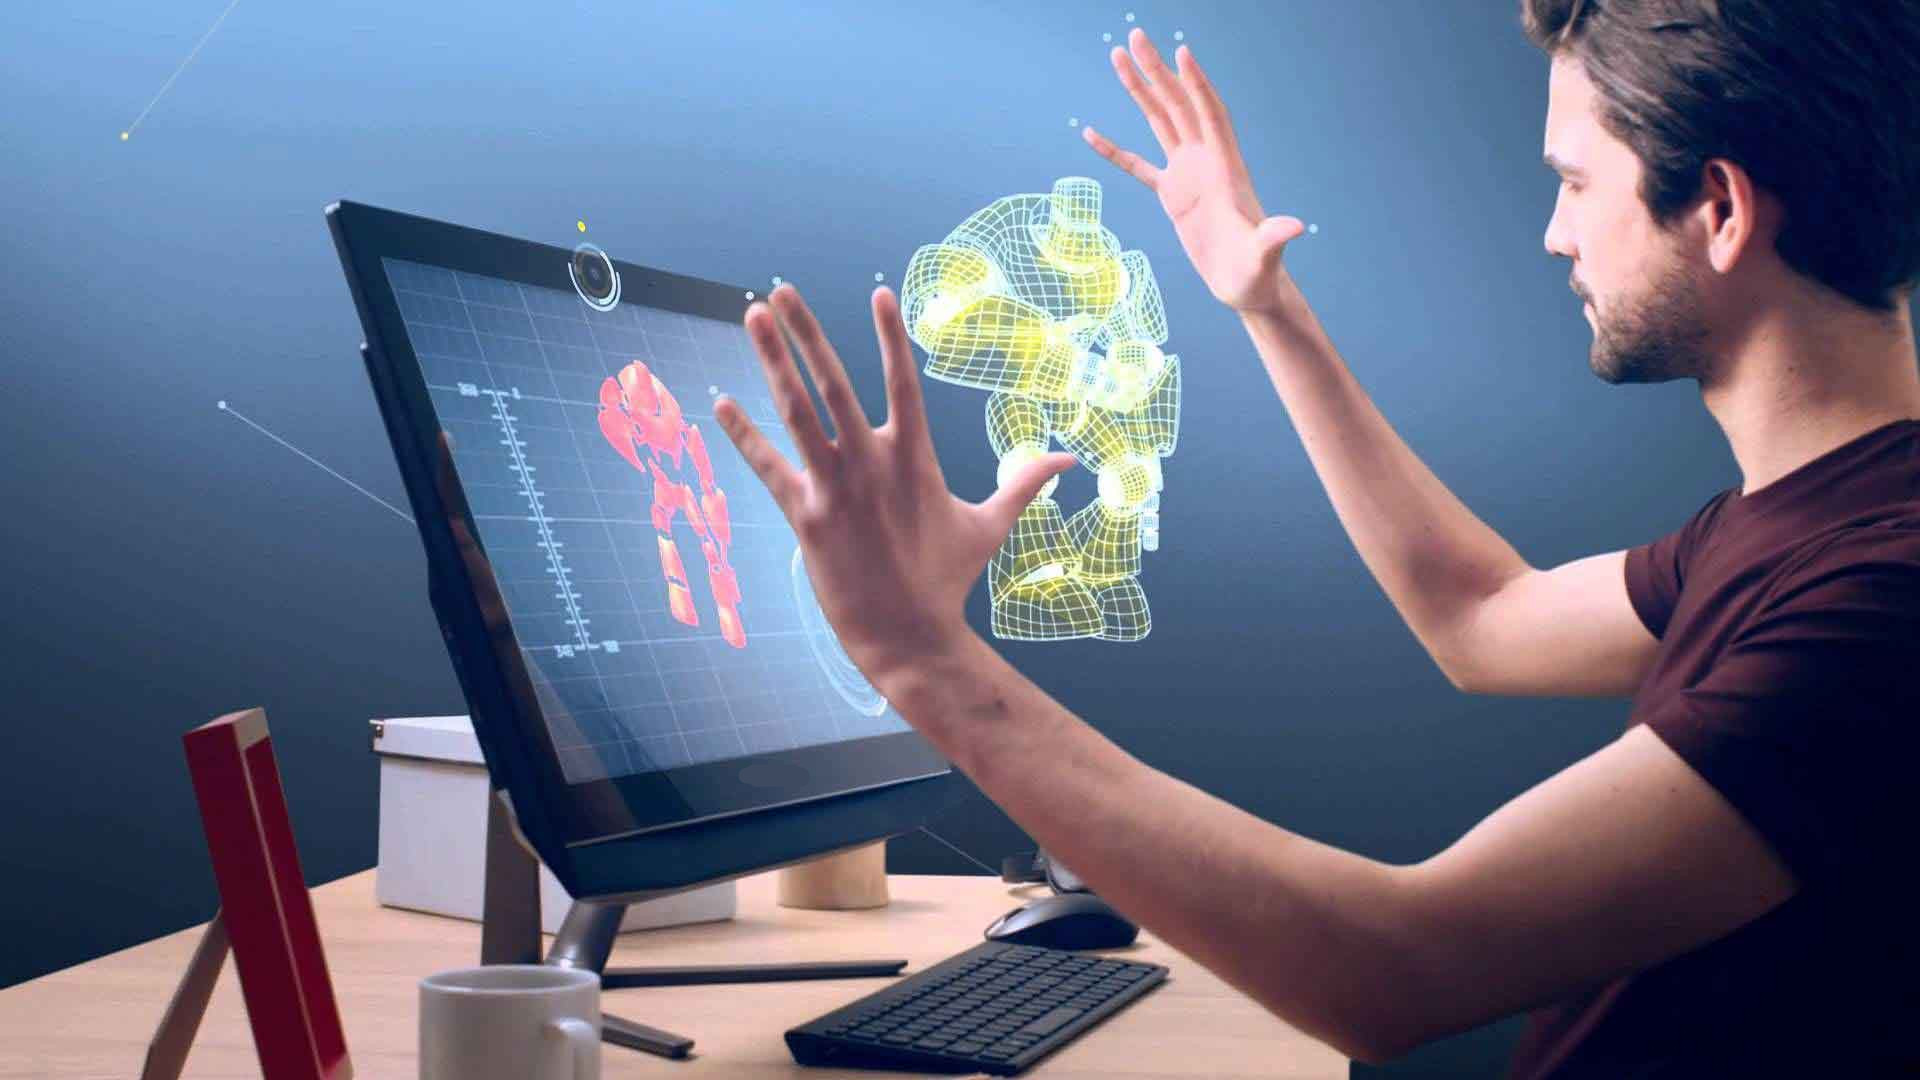 图片展示一位男士在电脑前，似乎在用手势操控屏幕上的三维图形设计。环境现代，技术感强。